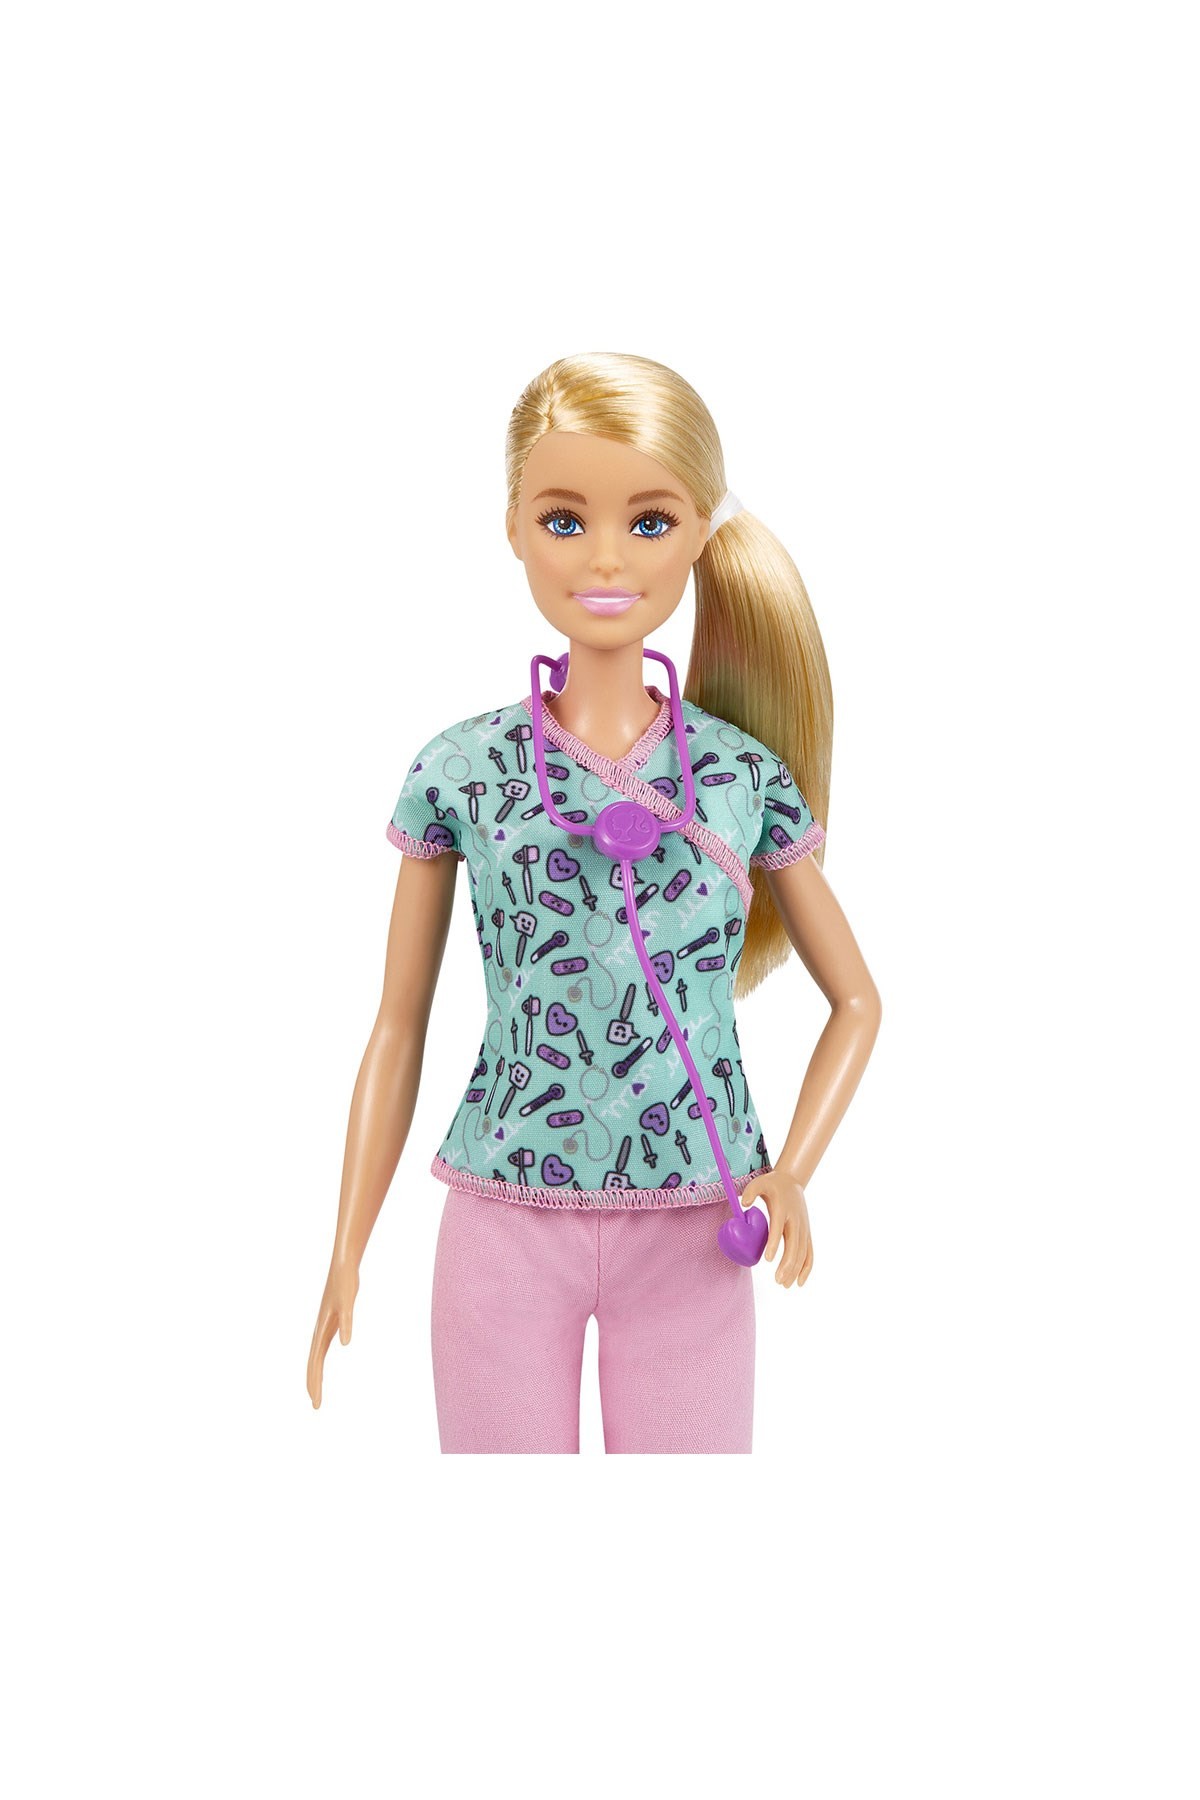 Barbie Kariyer Bebekleri Serisi Hemşire GTW39